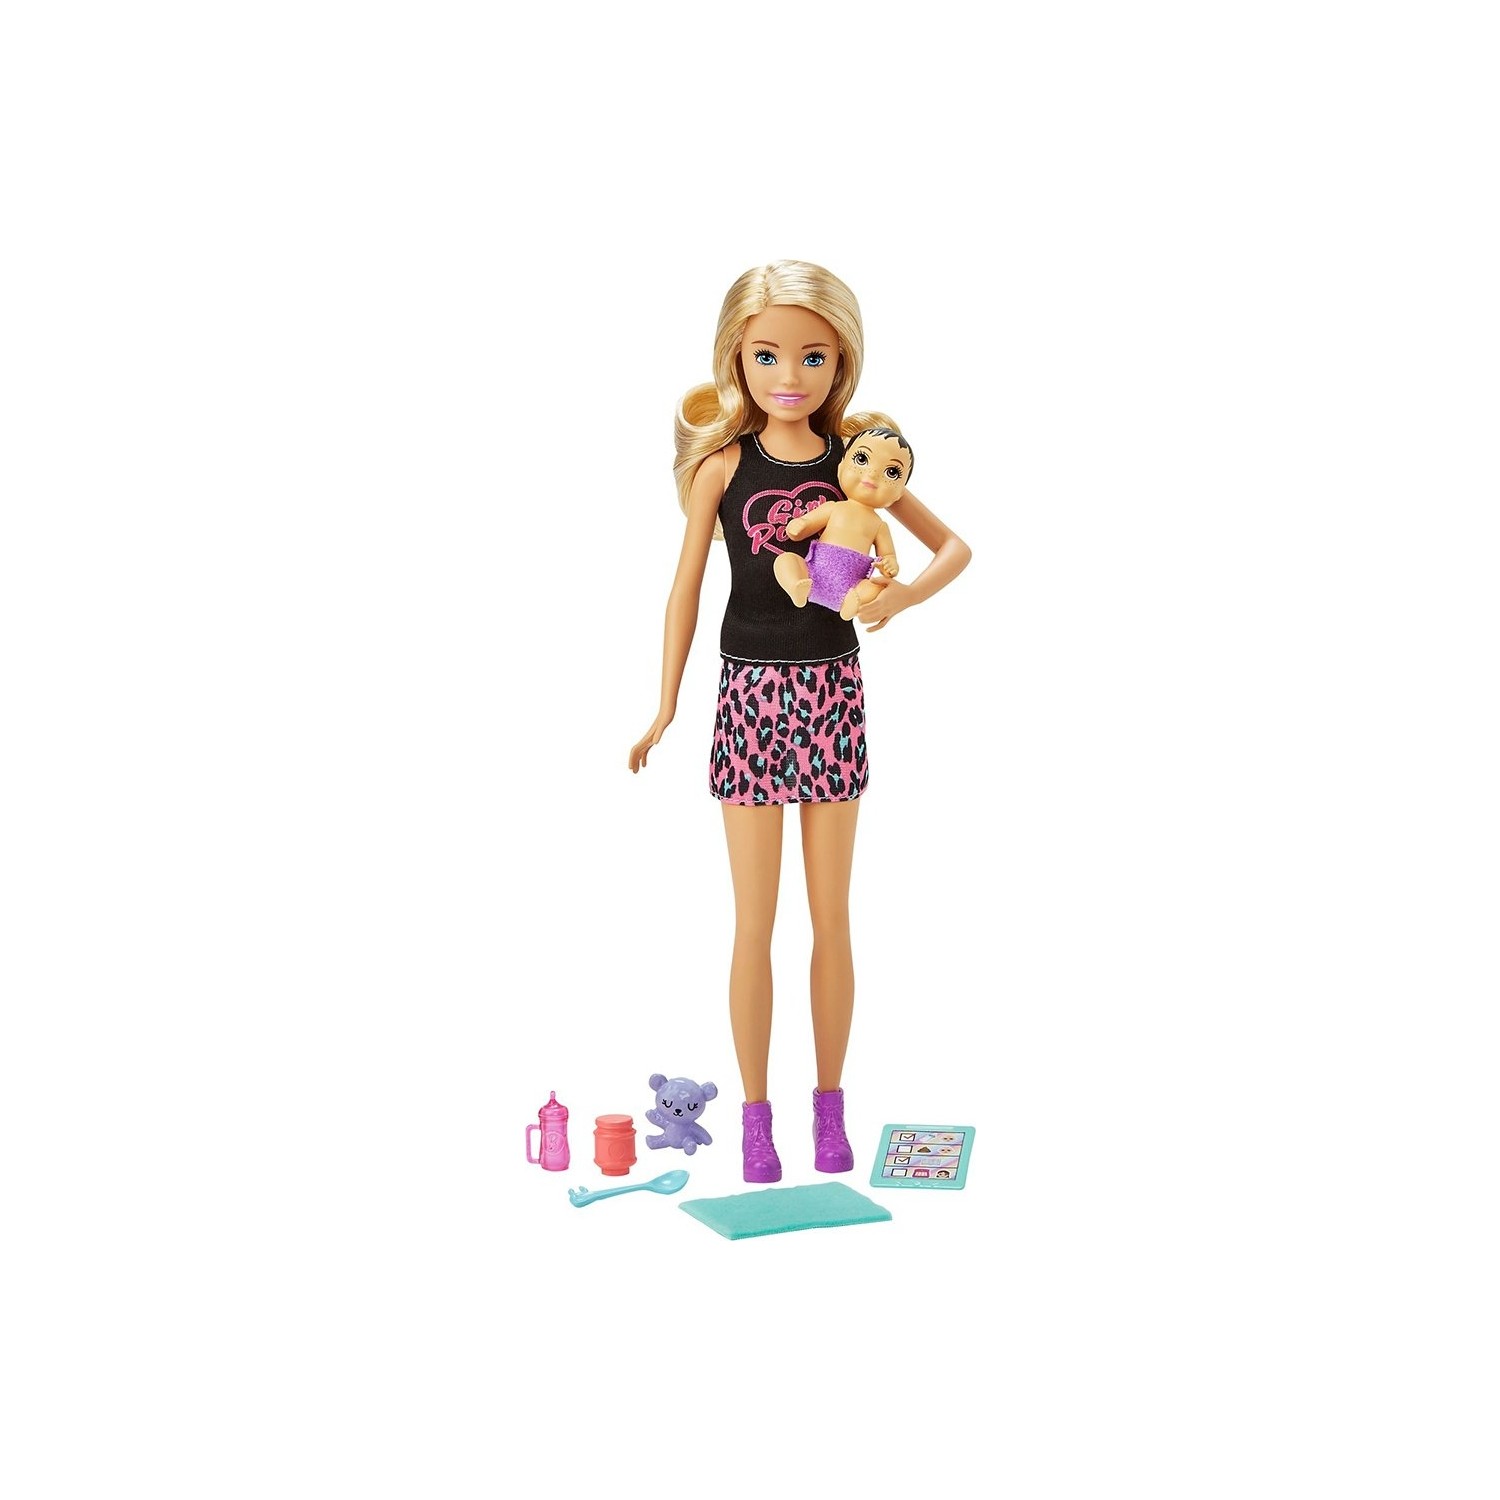 Игровой набор с куклой Barbie и аксессуарами GRP10 кукла барби с гитарой и сумочкой 29 см игровой набор барби с аксессуарами интерактивная игрушка кукла